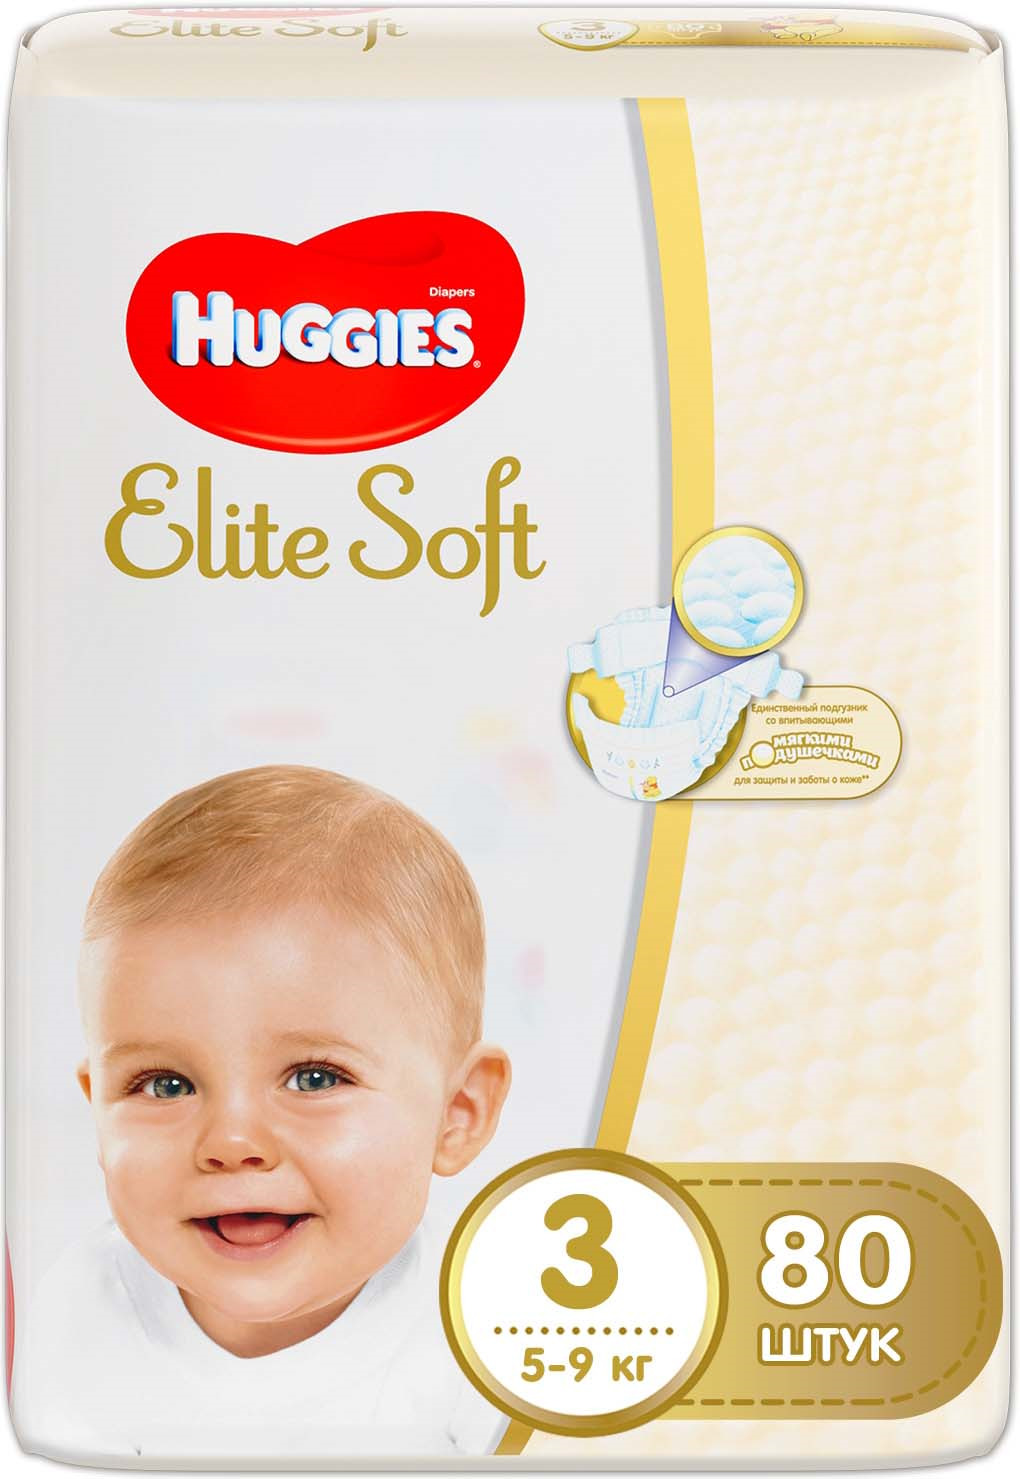 Huggies Подгузники Elite Soft 5-9 кг (размер 3) 80 шт